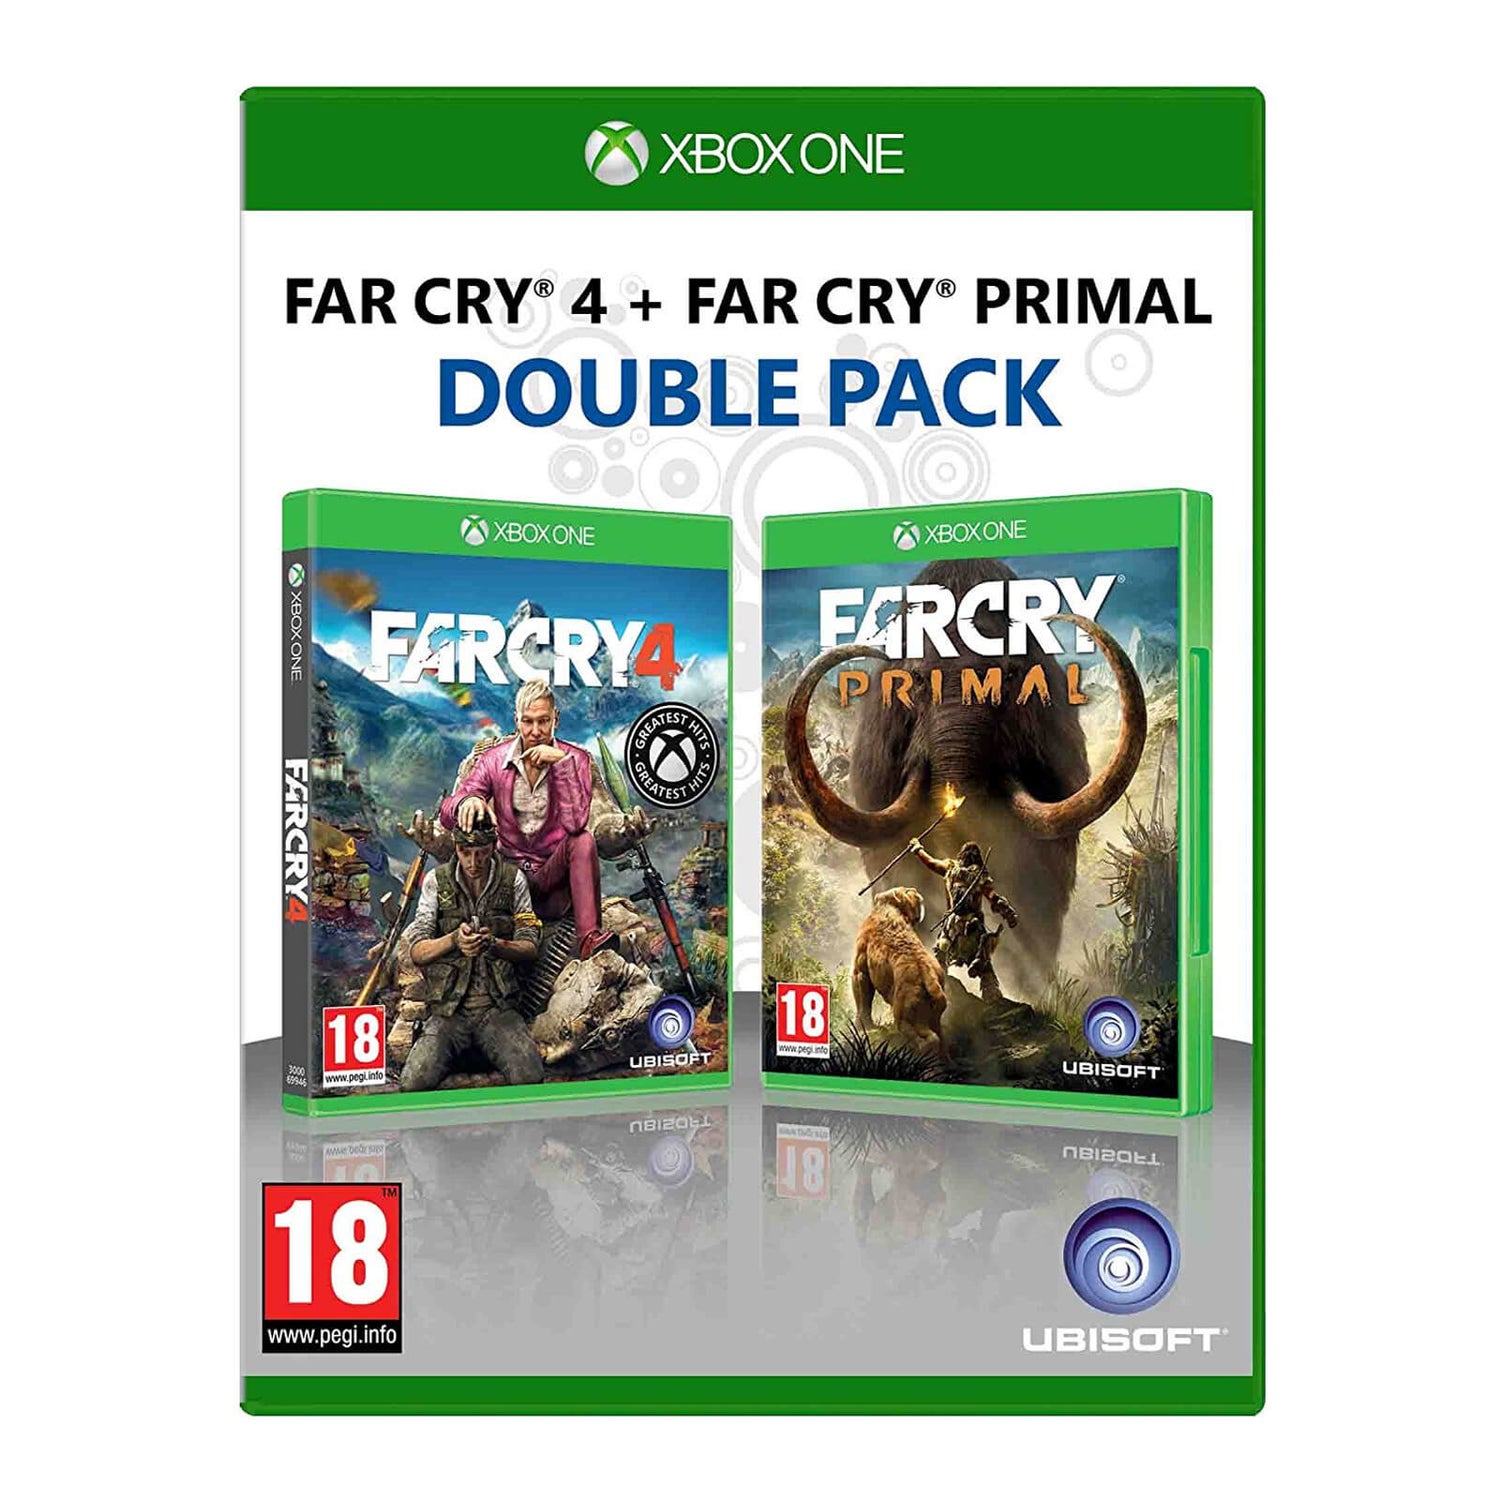 Far Cry 4 - Xbox One 